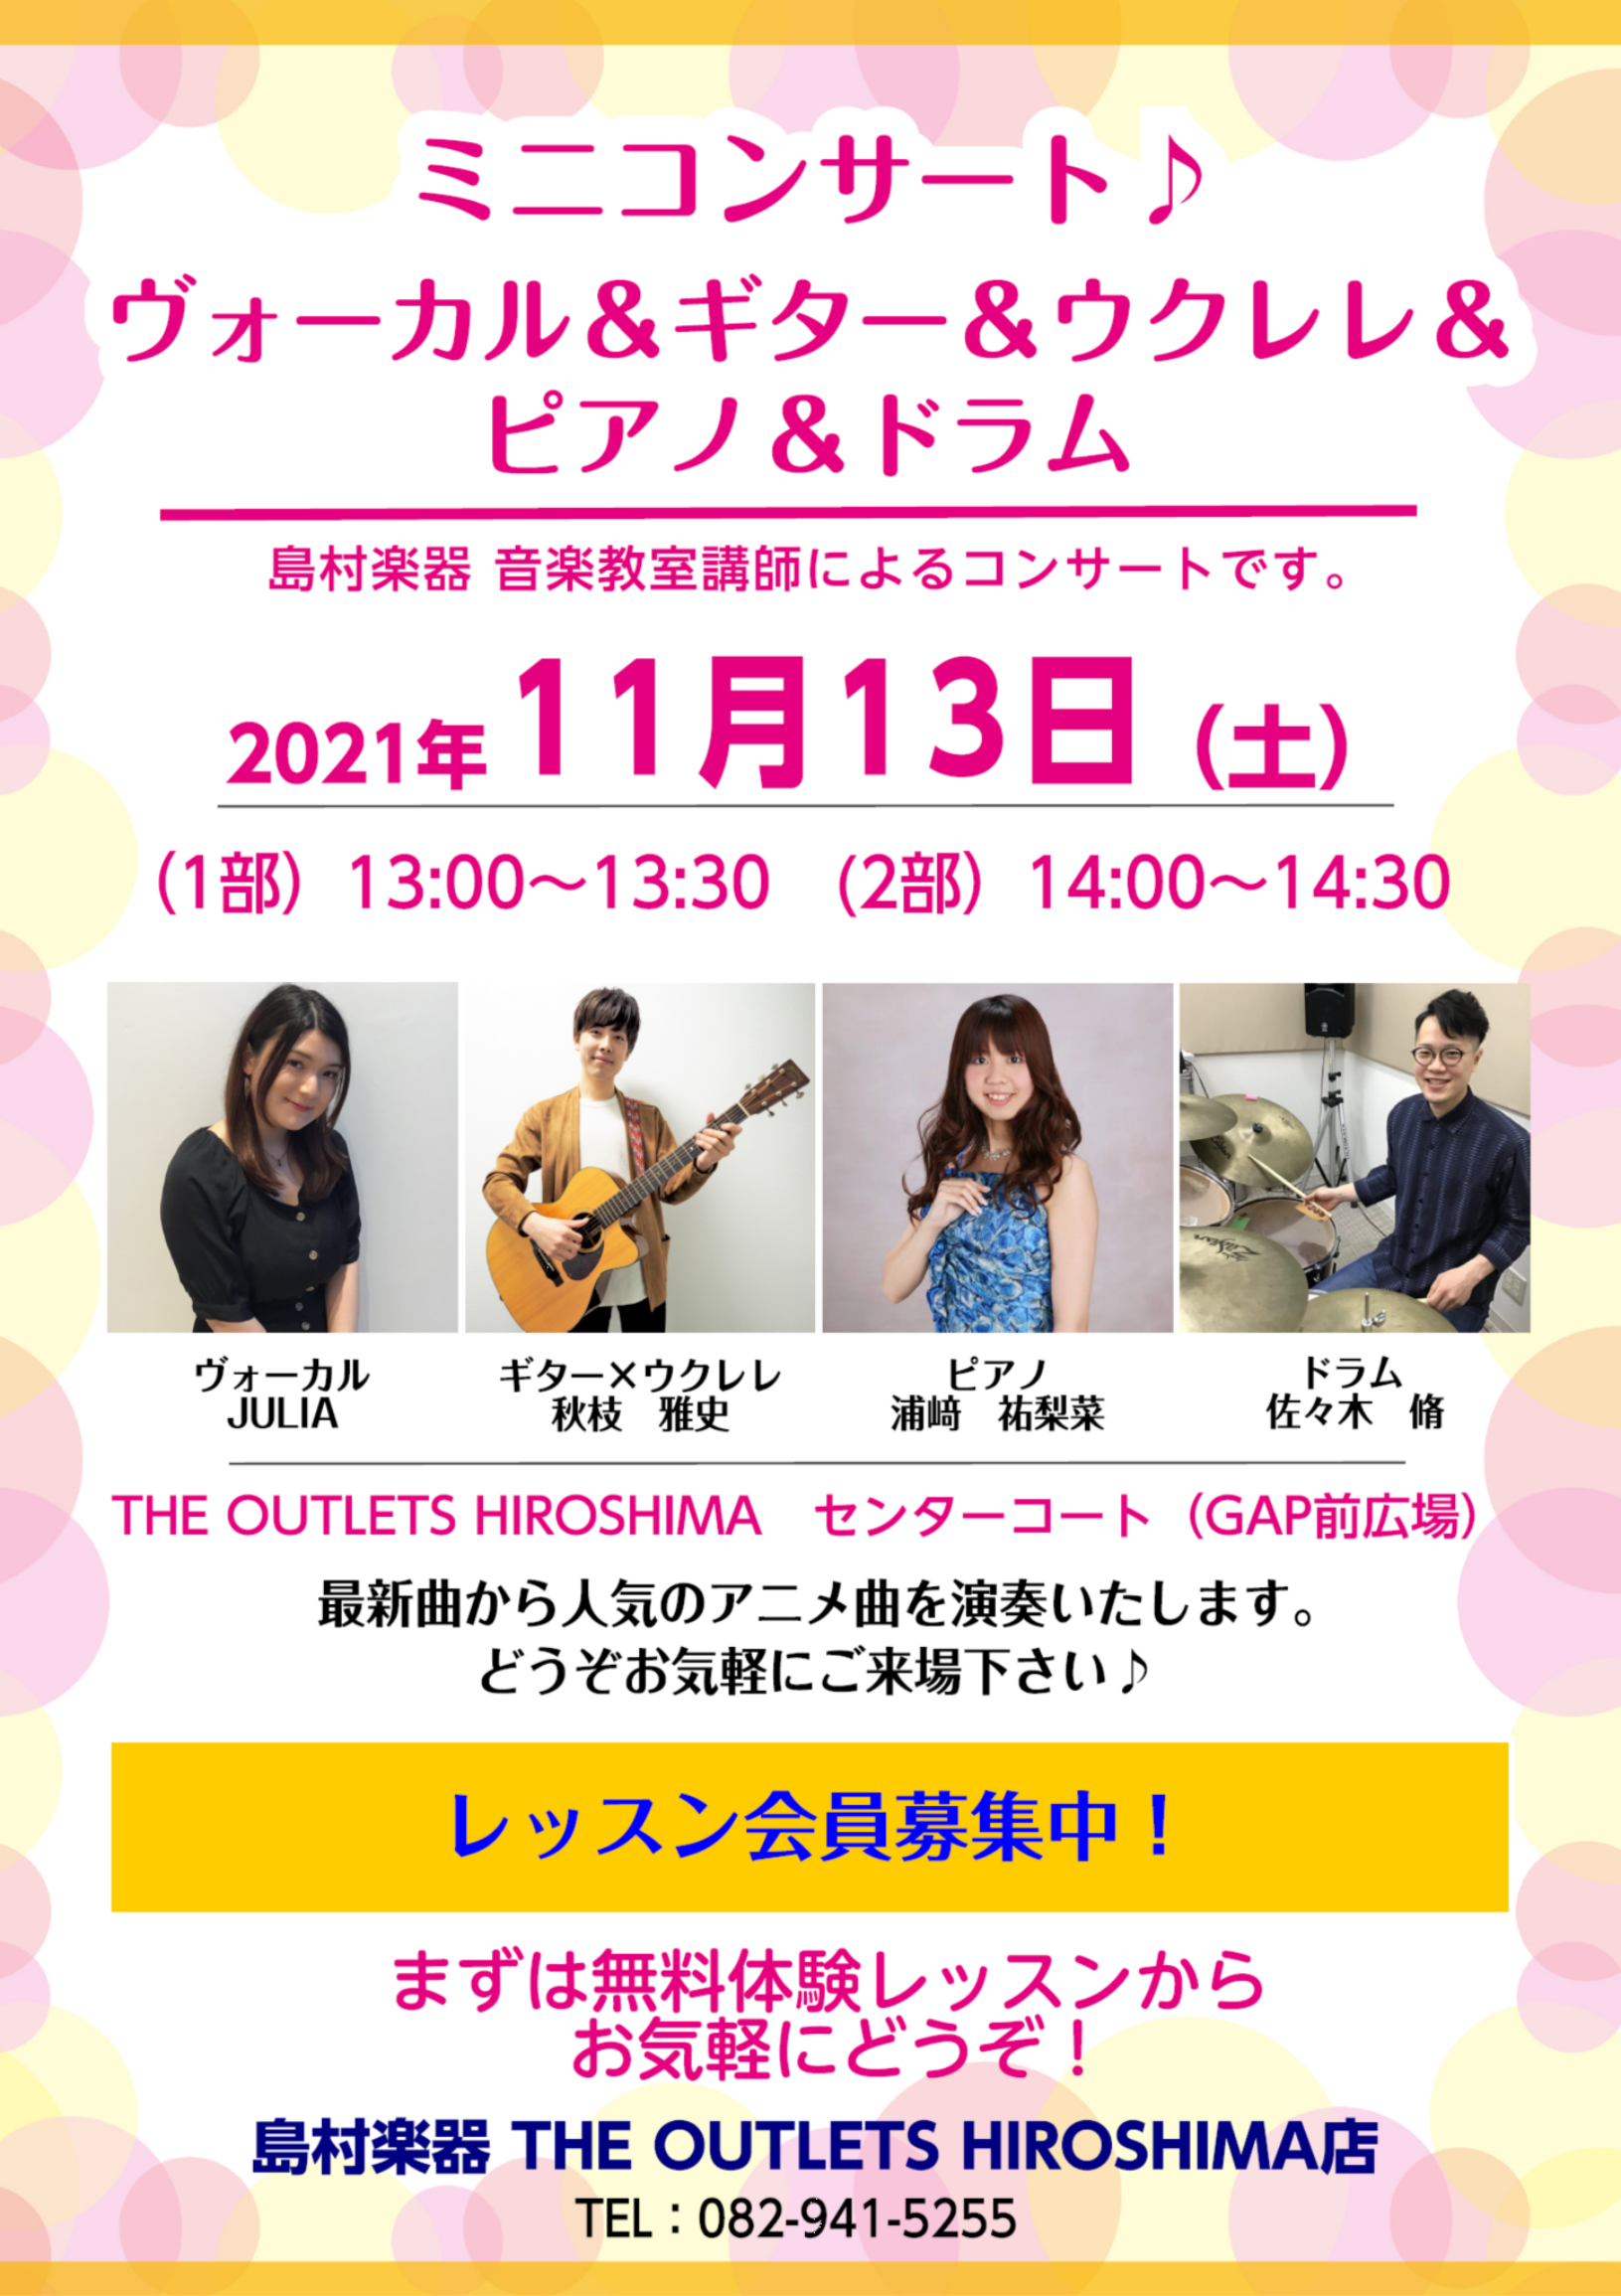 音楽教室 11 13 土 音楽教室講師による ミニコンサート The Outlets Hiroshima店 店舗情報 島村楽器